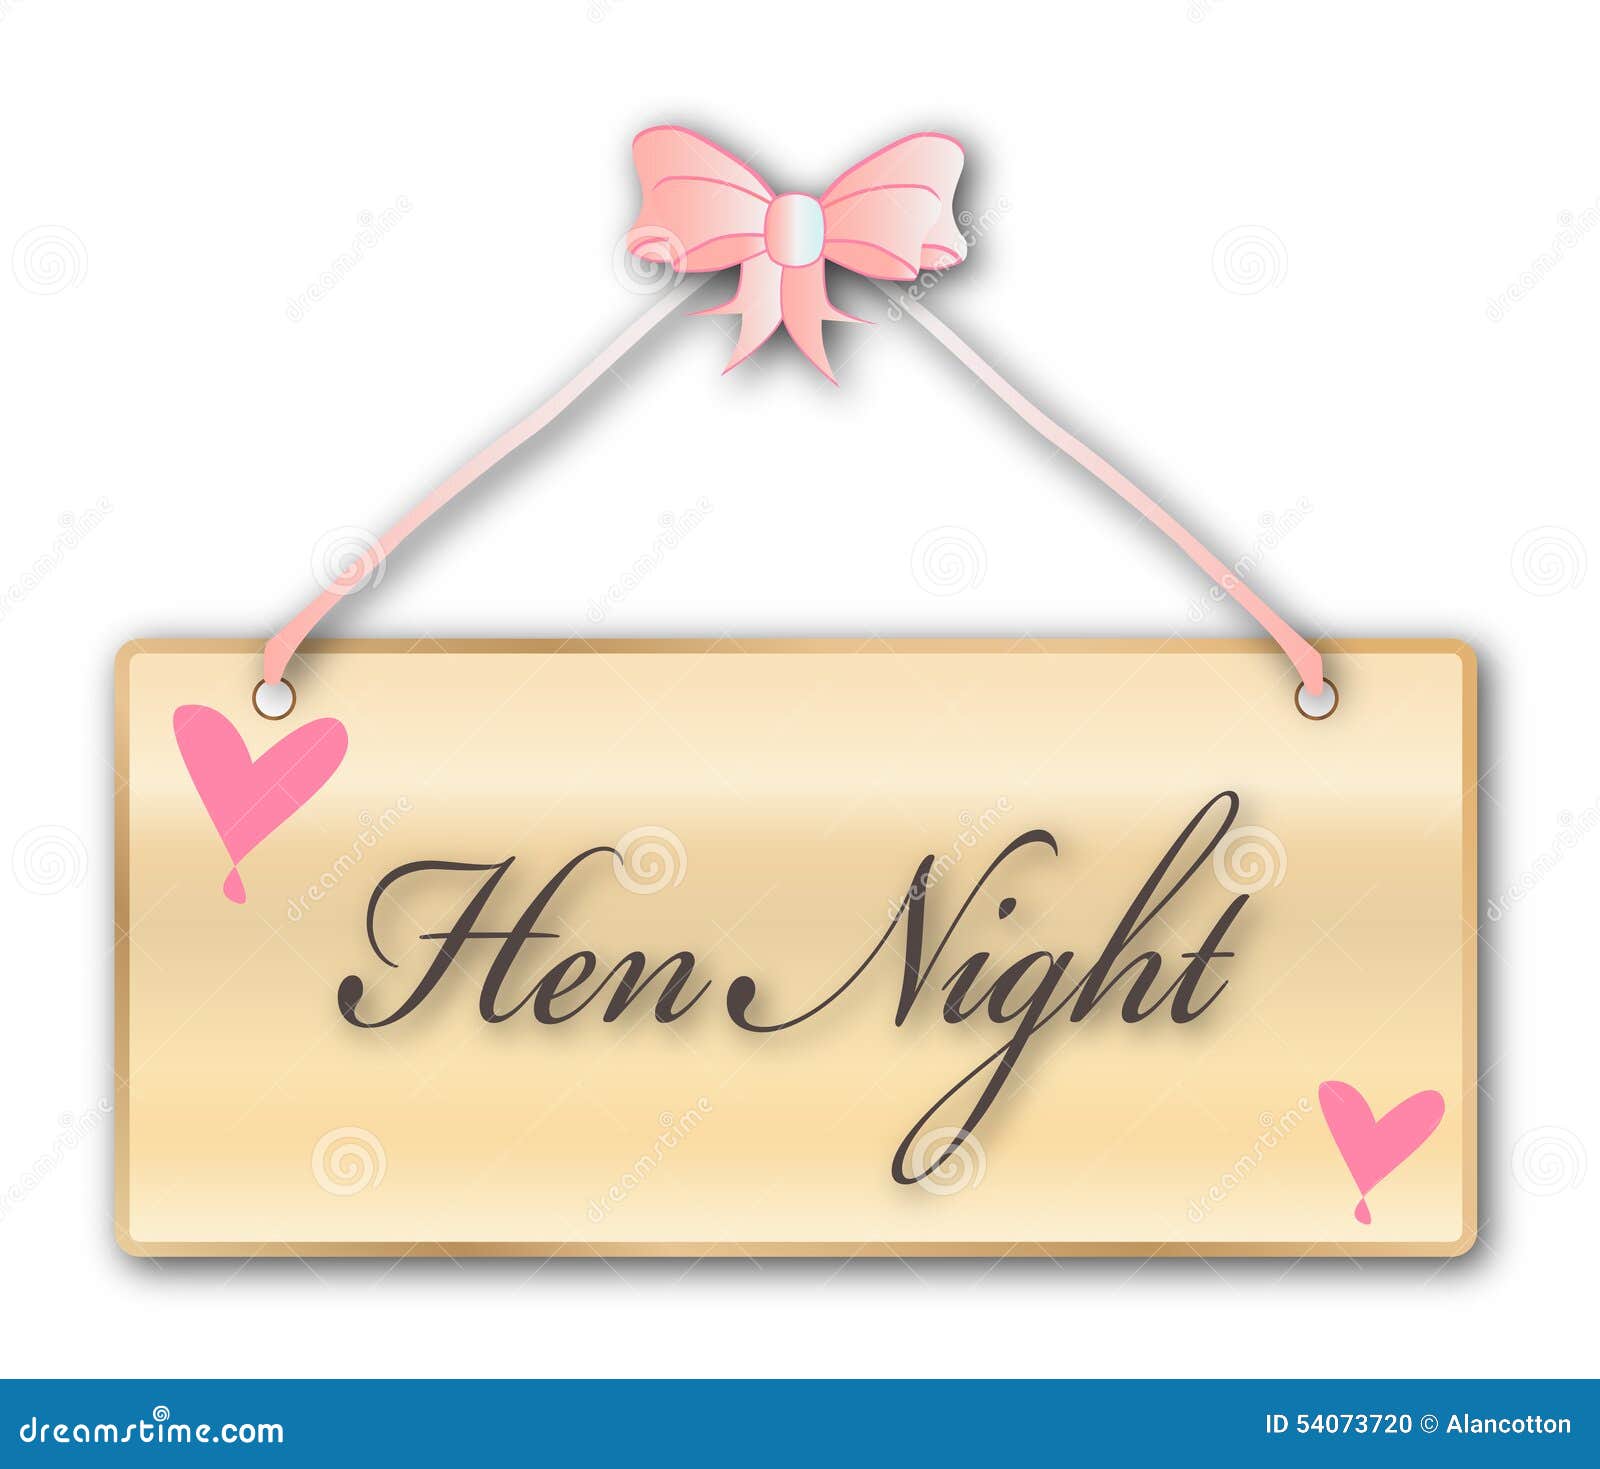 hen night clipart - photo #11